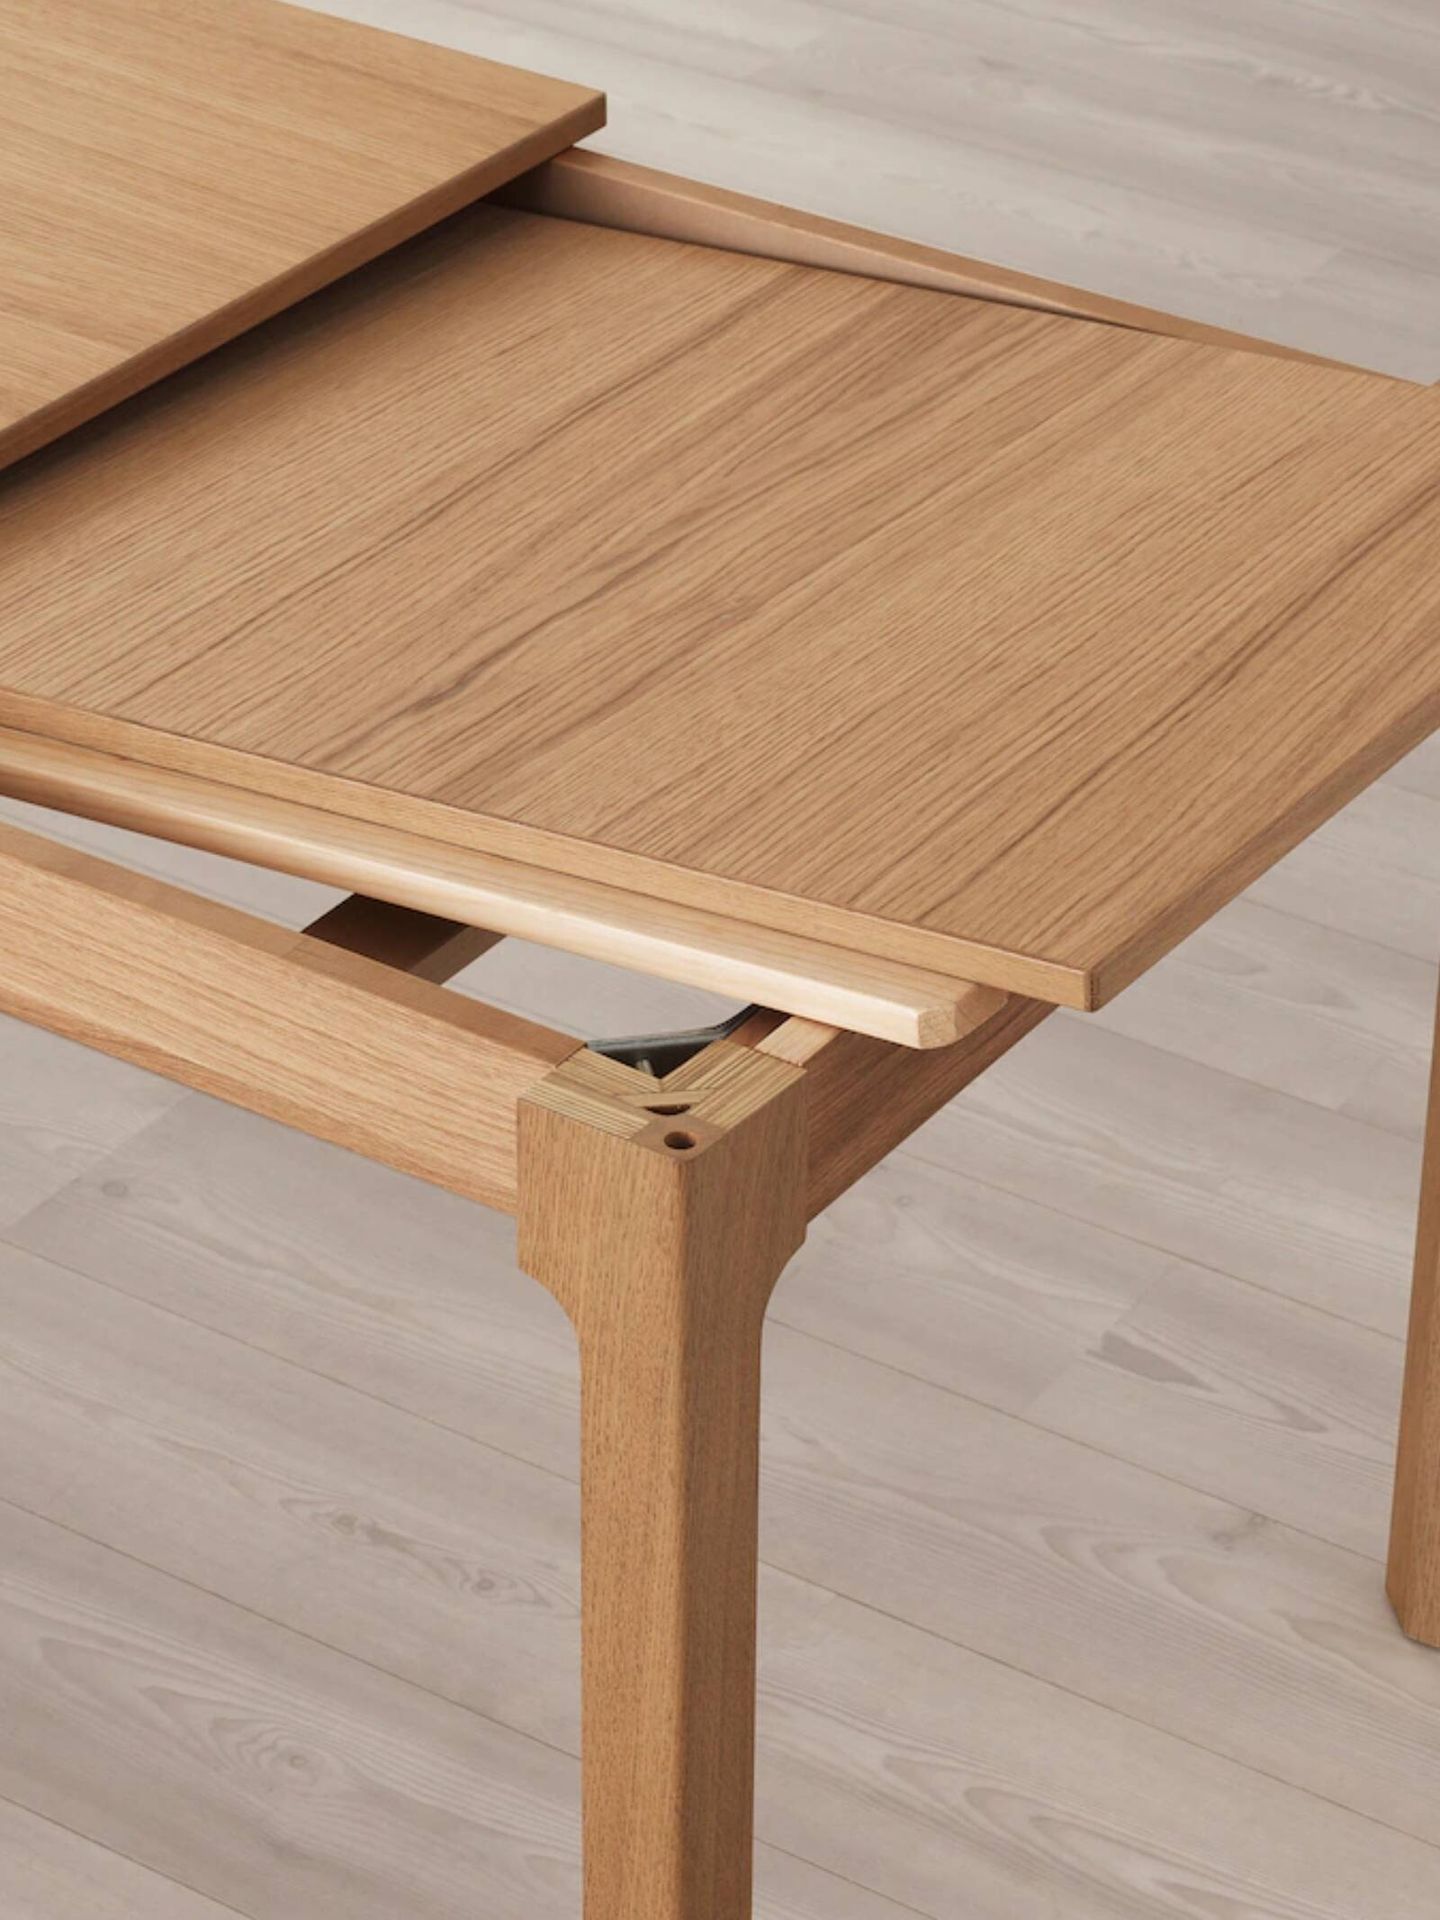 Mesa de comedor de Ikea, el mueble ideal para casas pequeñas. (Cortesía)